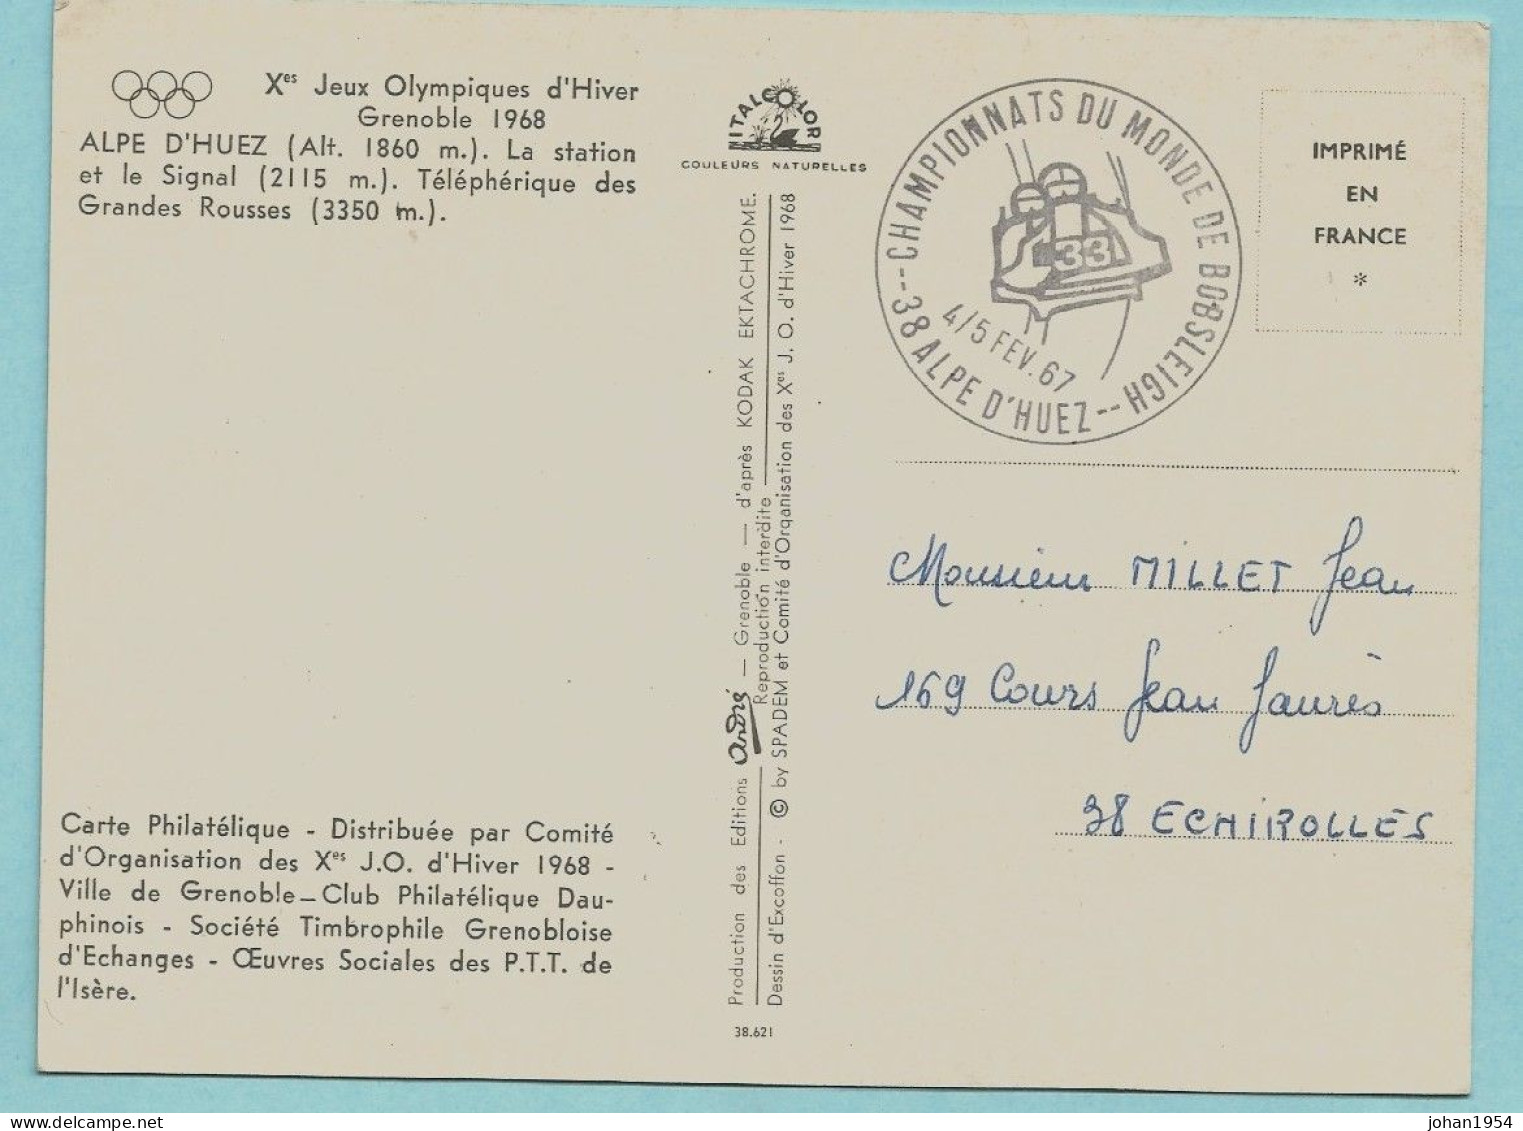 N°1490 Sur Carte - 33° CHAMPIONNATS DU MONDE BOBSLEIGH 1967 ALPE D'HUEZ - Winter 1968: Grenoble